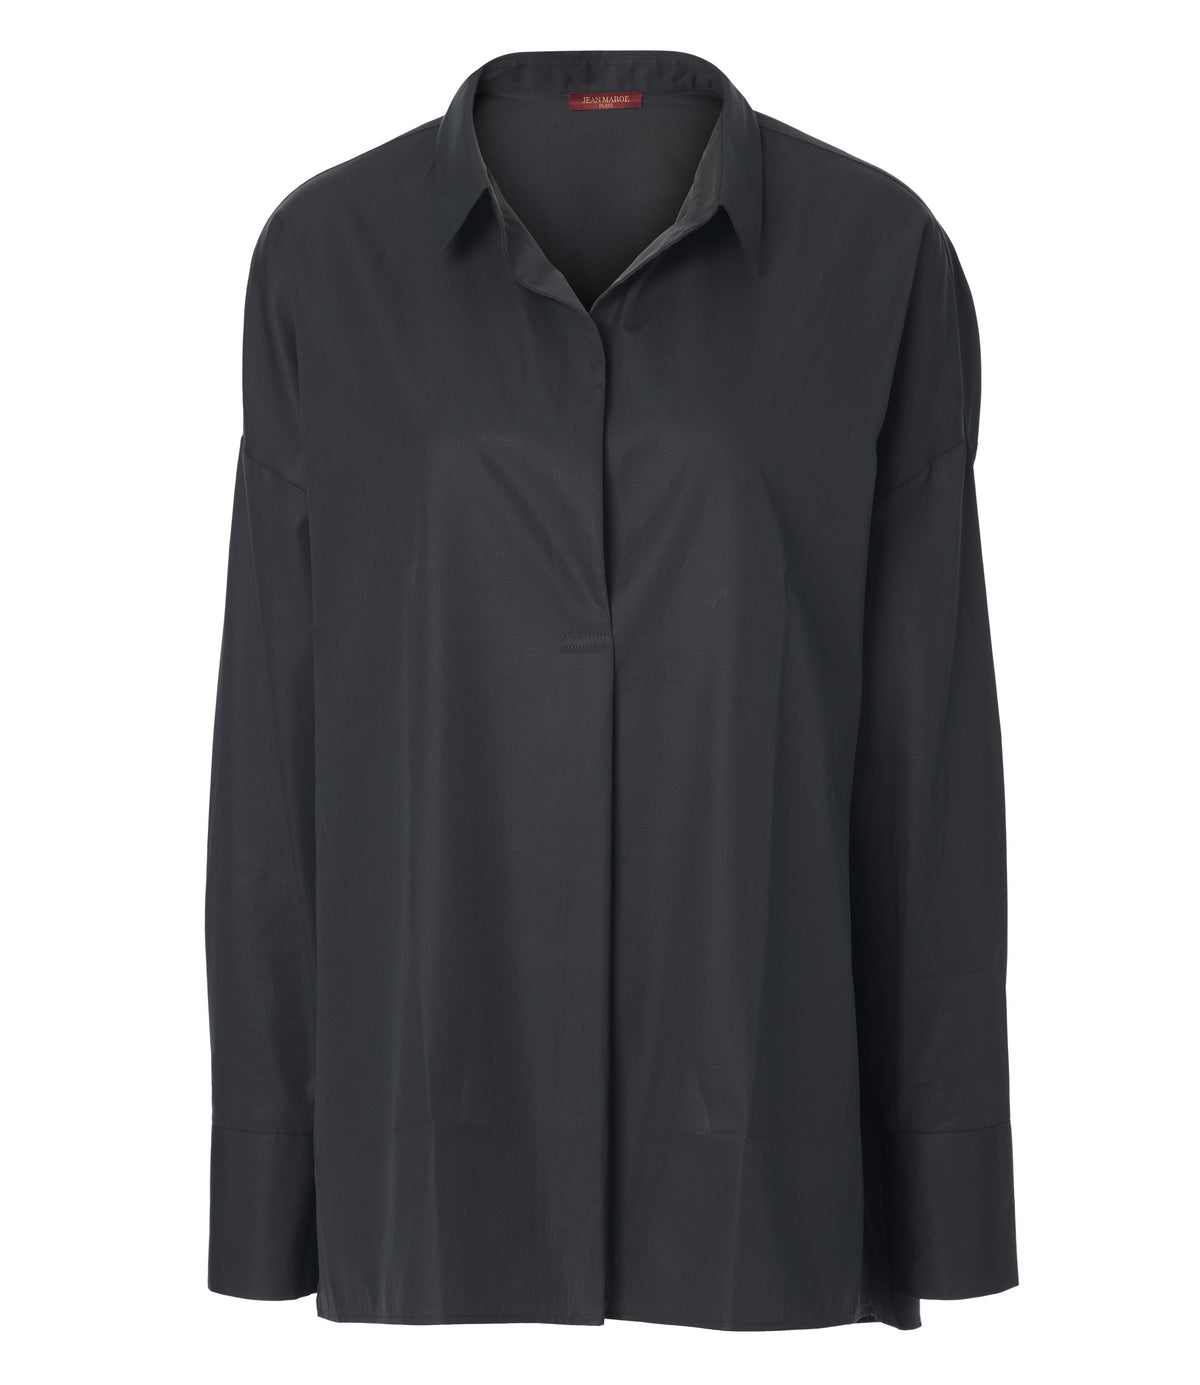 Jean Maroe - Bluse aus Baumwolle in schwarz